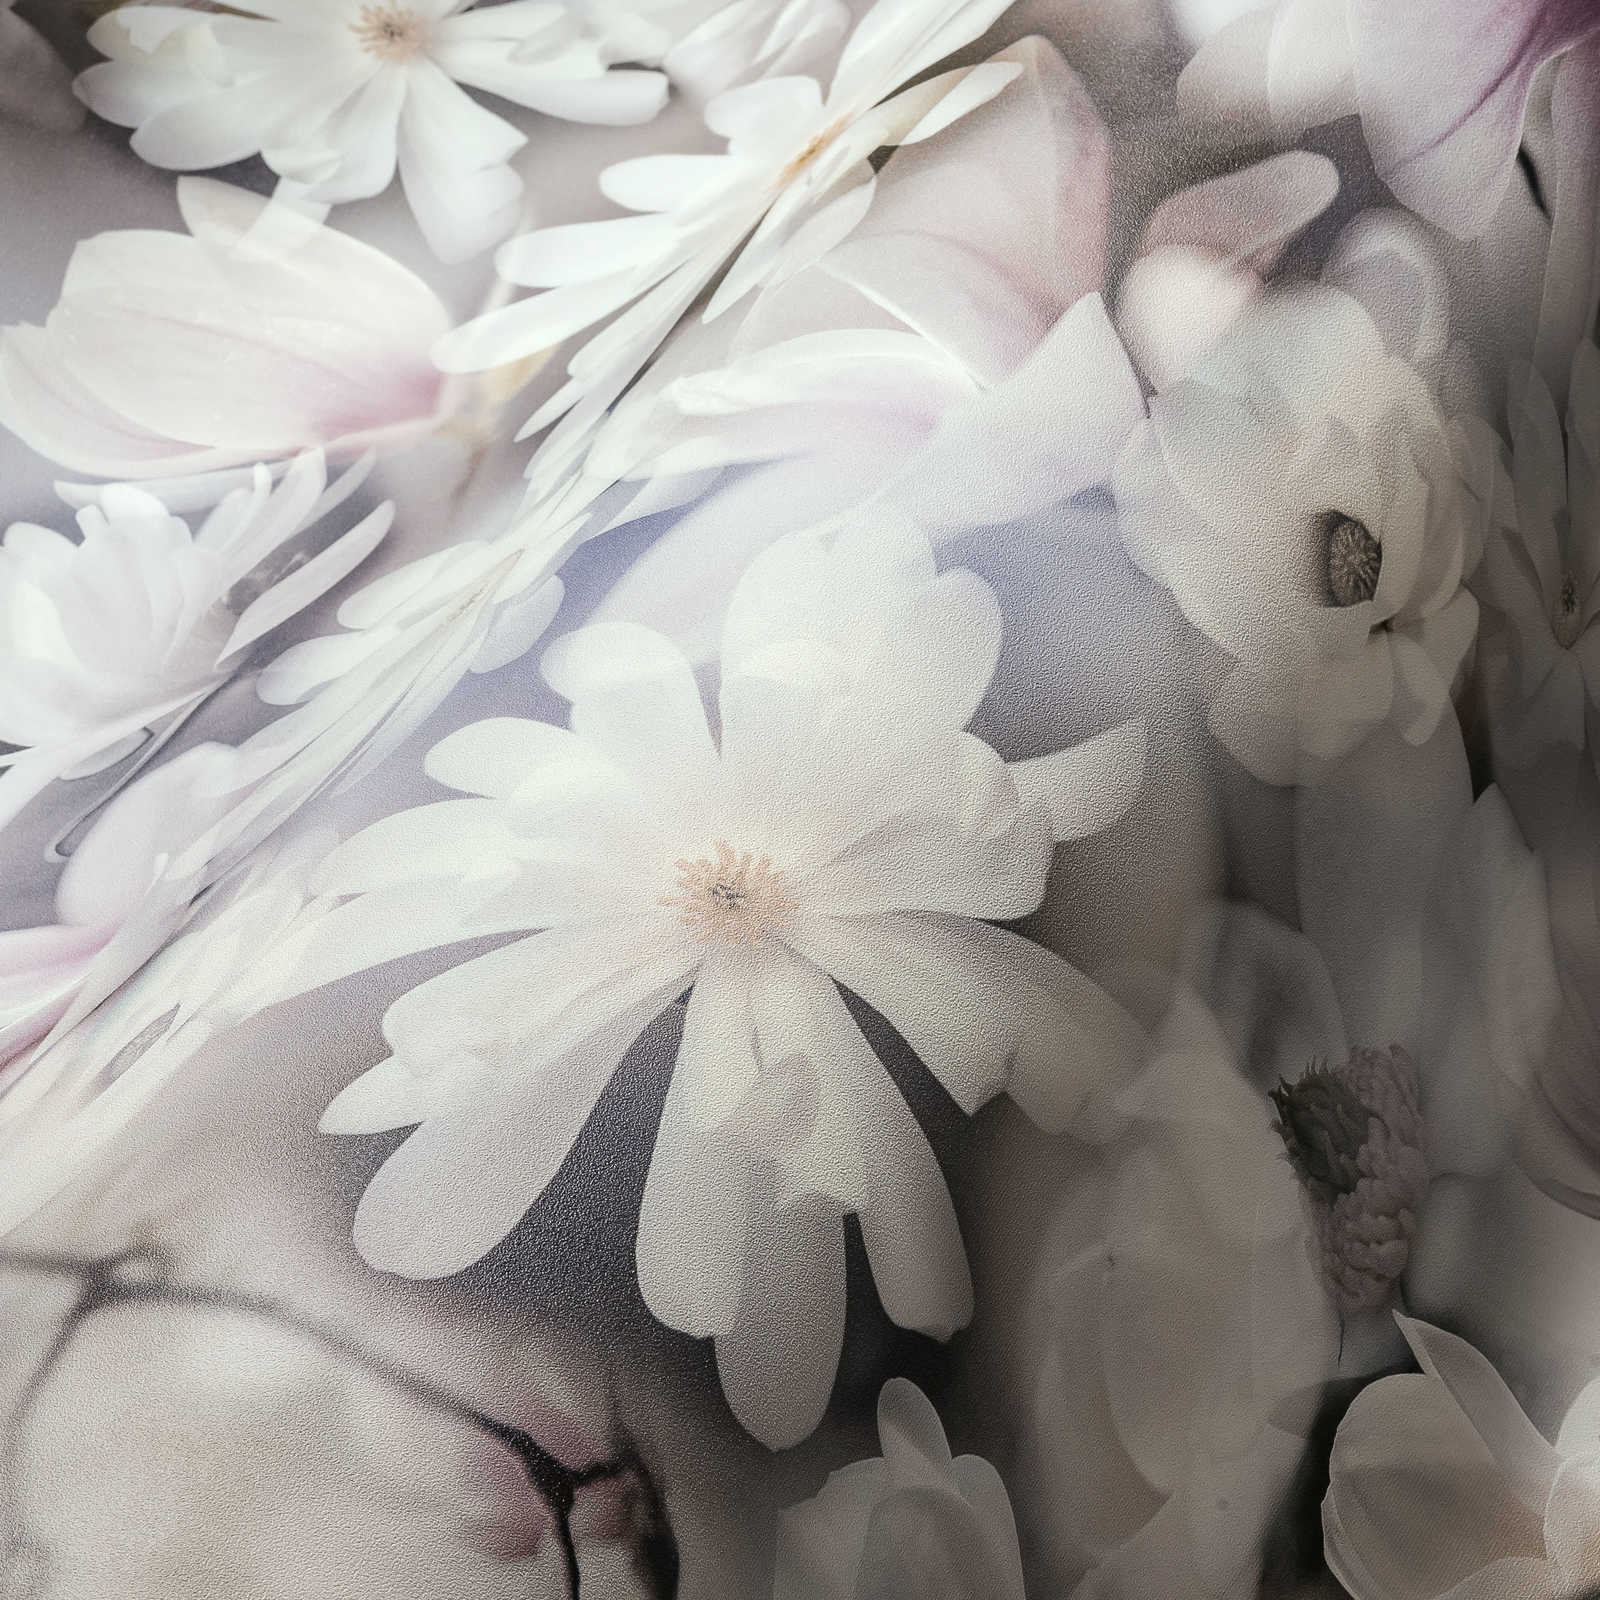             Tapete Blumen Collage in hellen Farben – Grau, Weiß
        